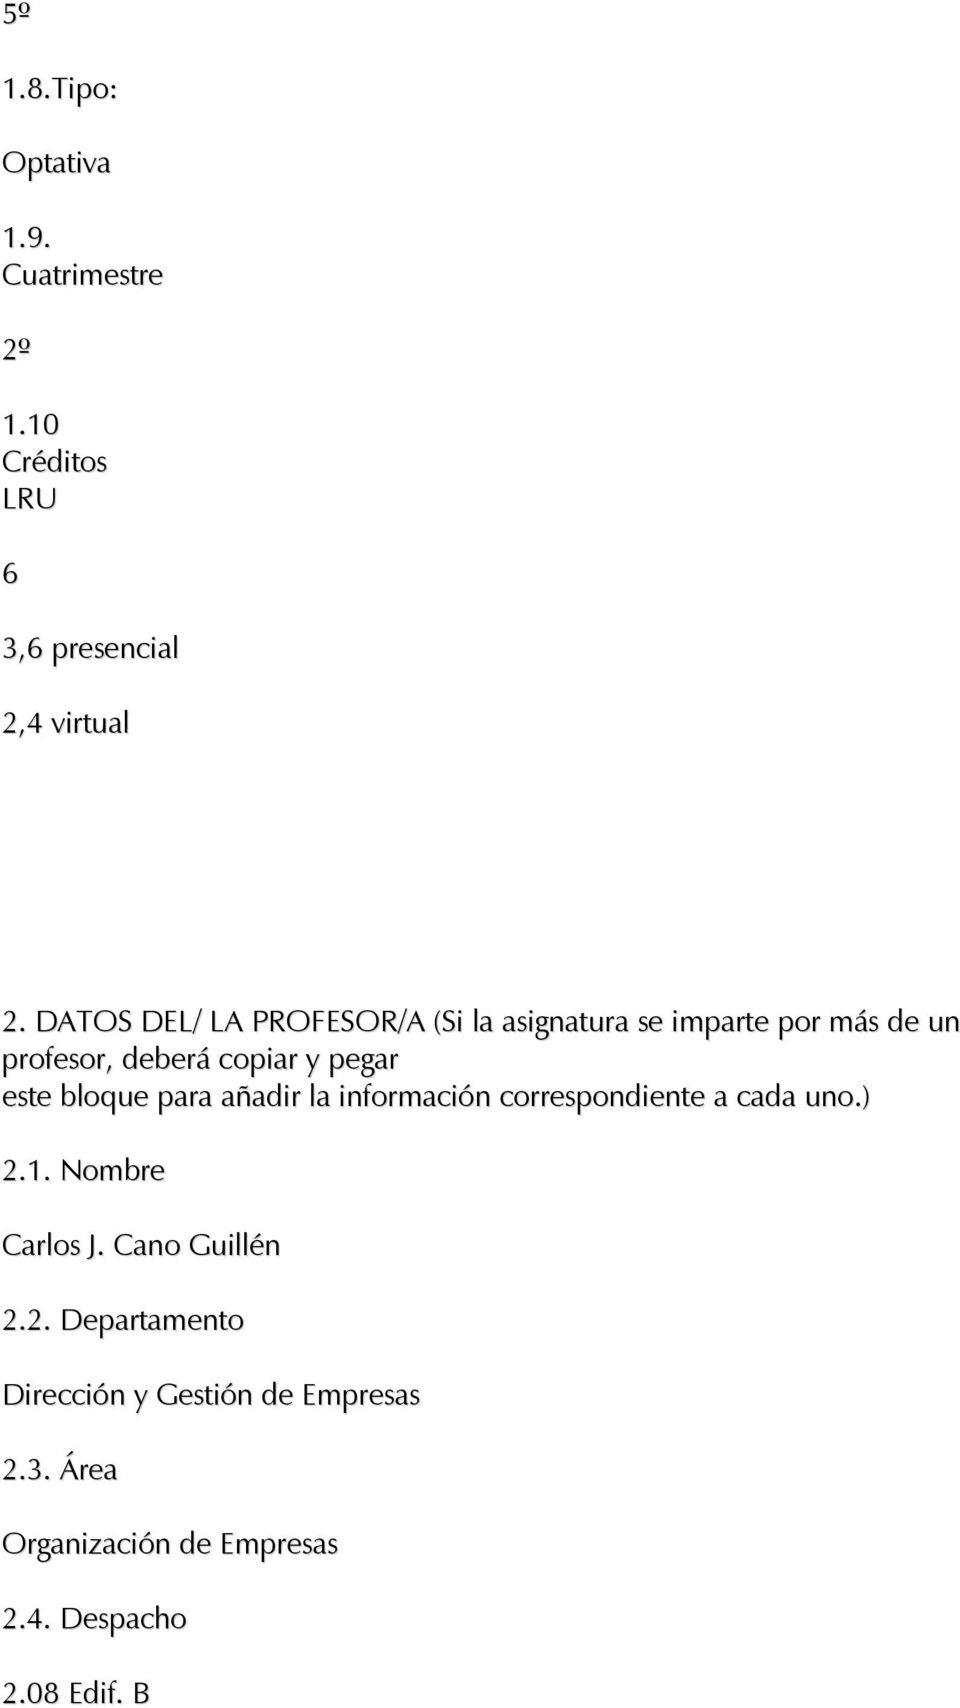 bloque para añadir la información correspondiente a cada uno) 21 Nombre Carlos J Cano Guillén 22